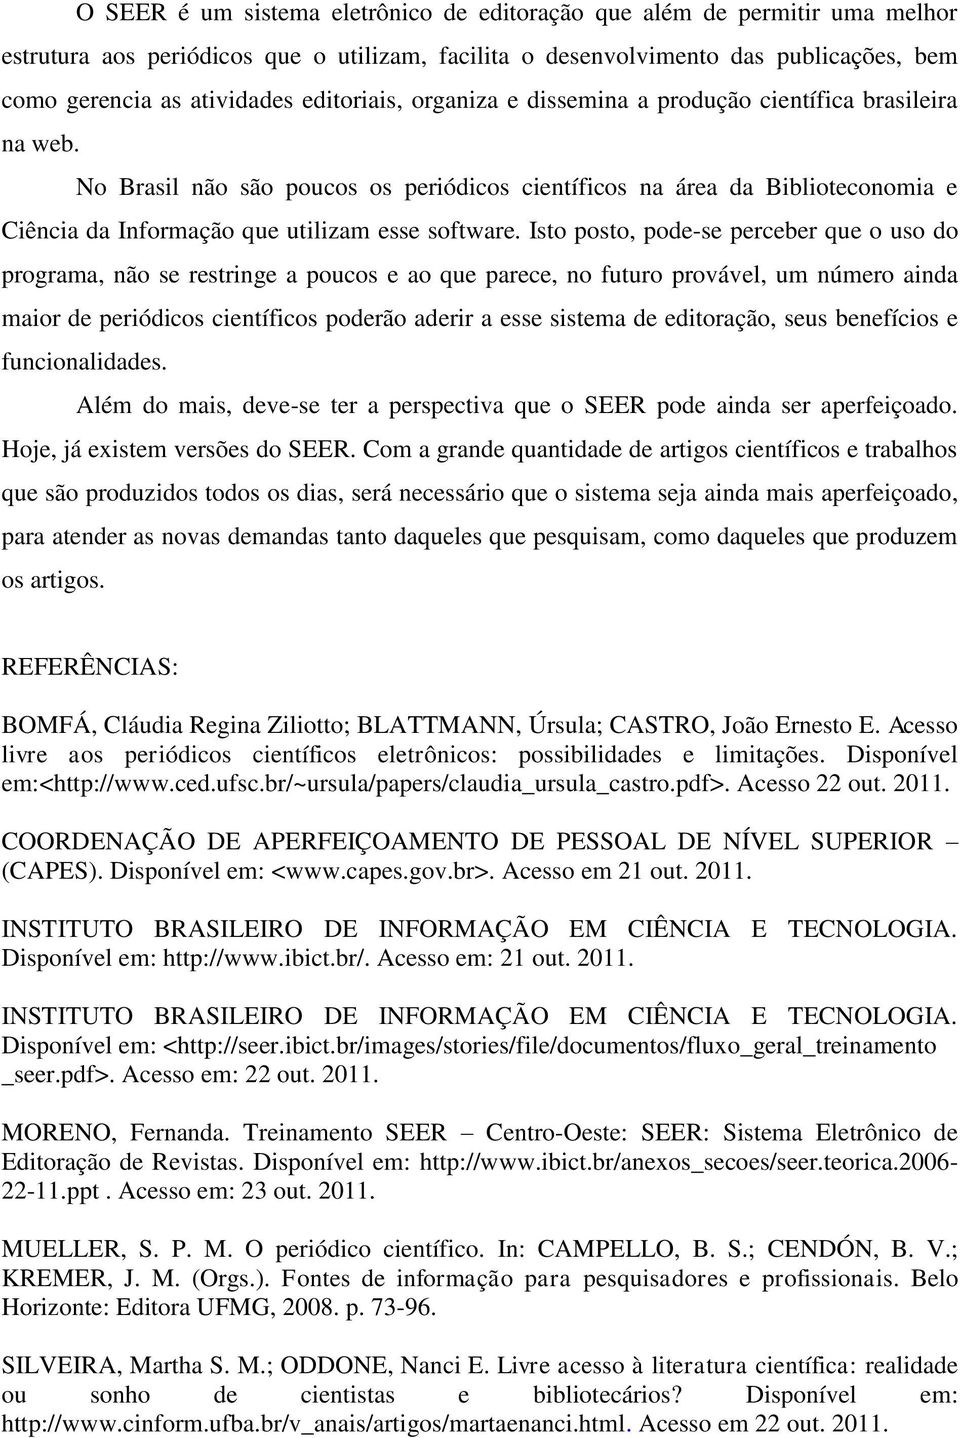 No Brasil não são poucos os periódicos científicos na área da Biblioteconomia e Ciência da Informação que utilizam esse software.